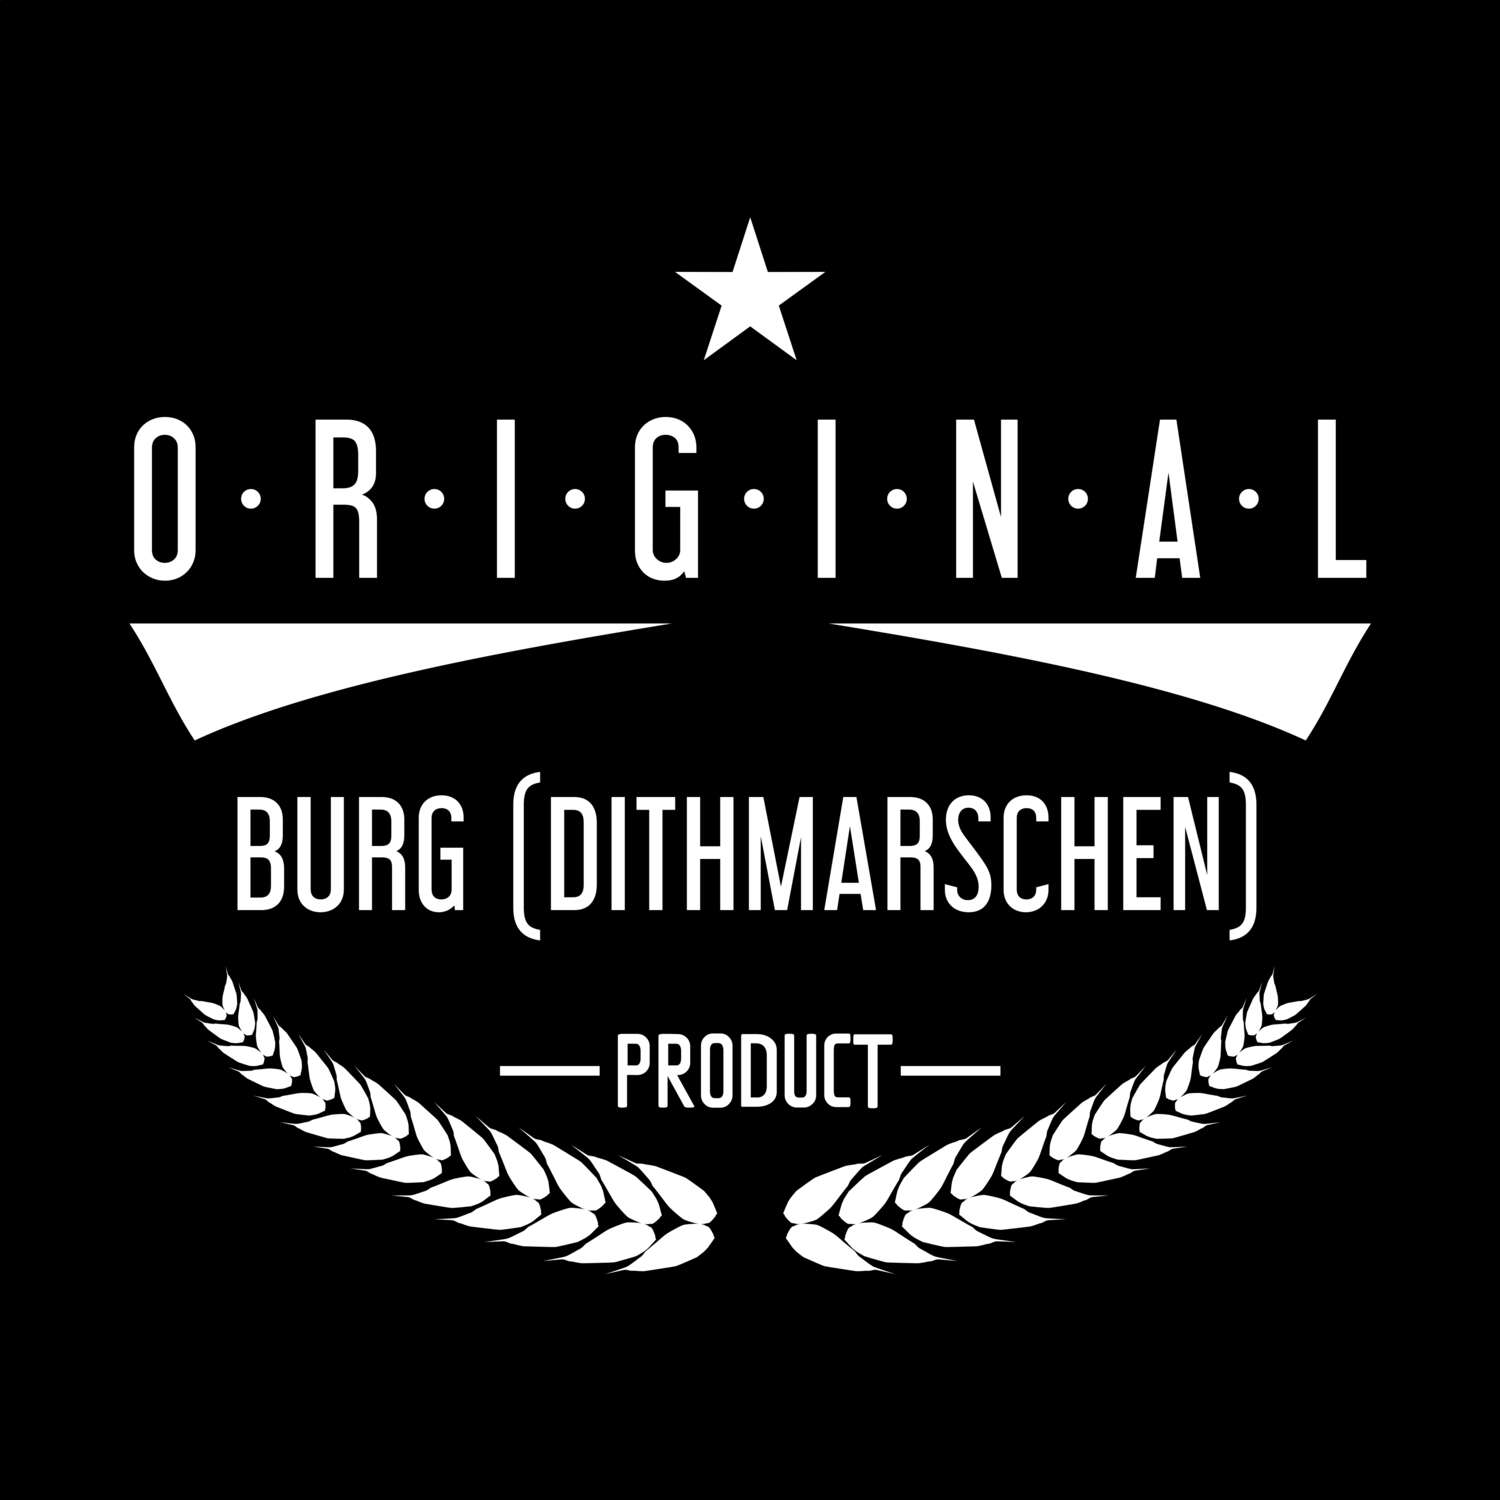 Burg (Dithmarschen) T-Shirt »Original Product«